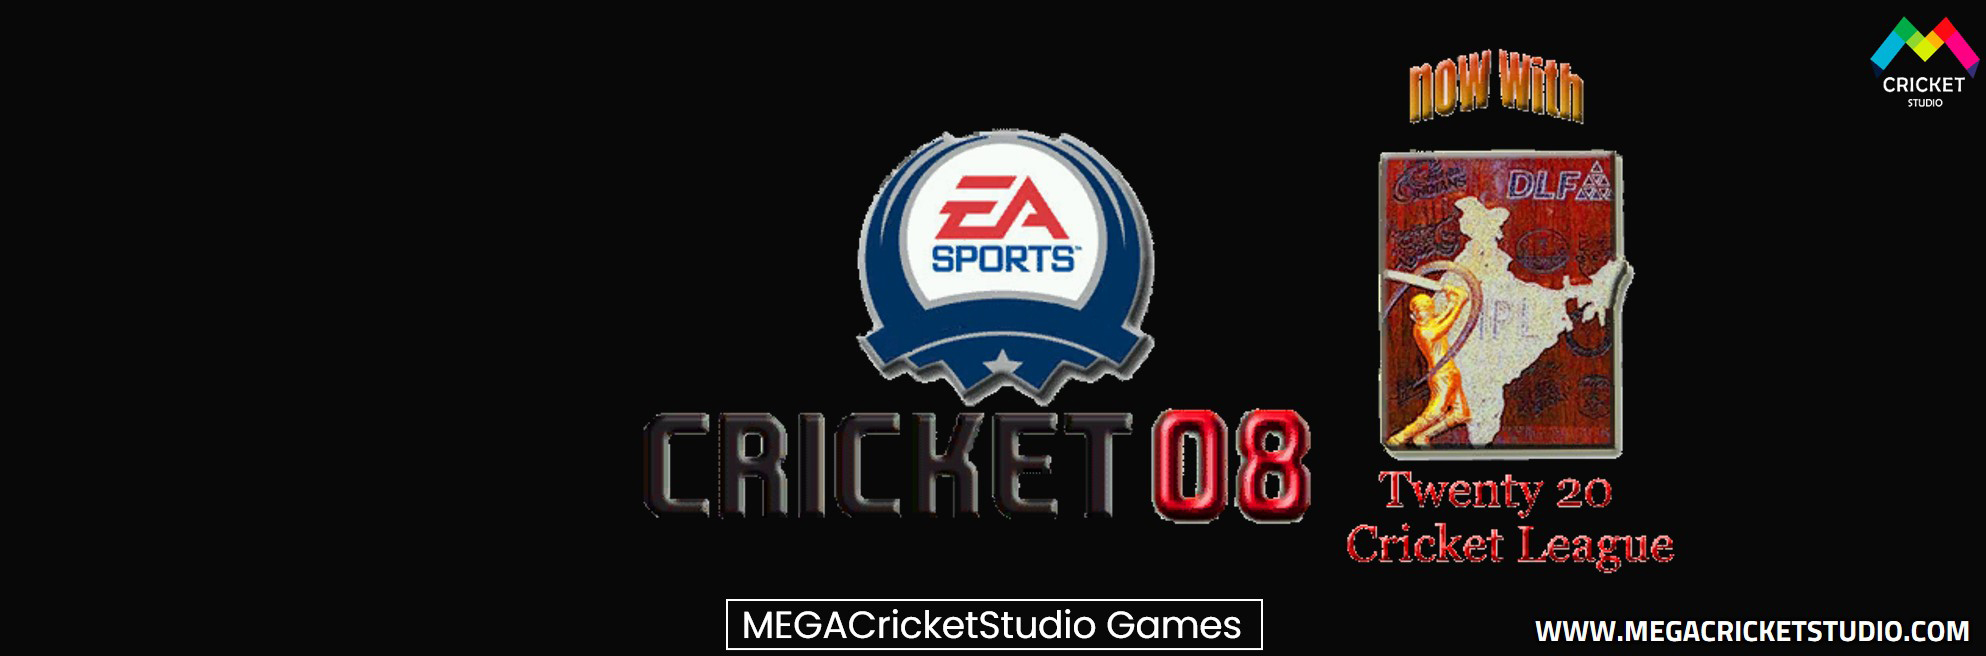 CRICKET 2008 IPL SUPER PATCH V3 for EA Cricket 07